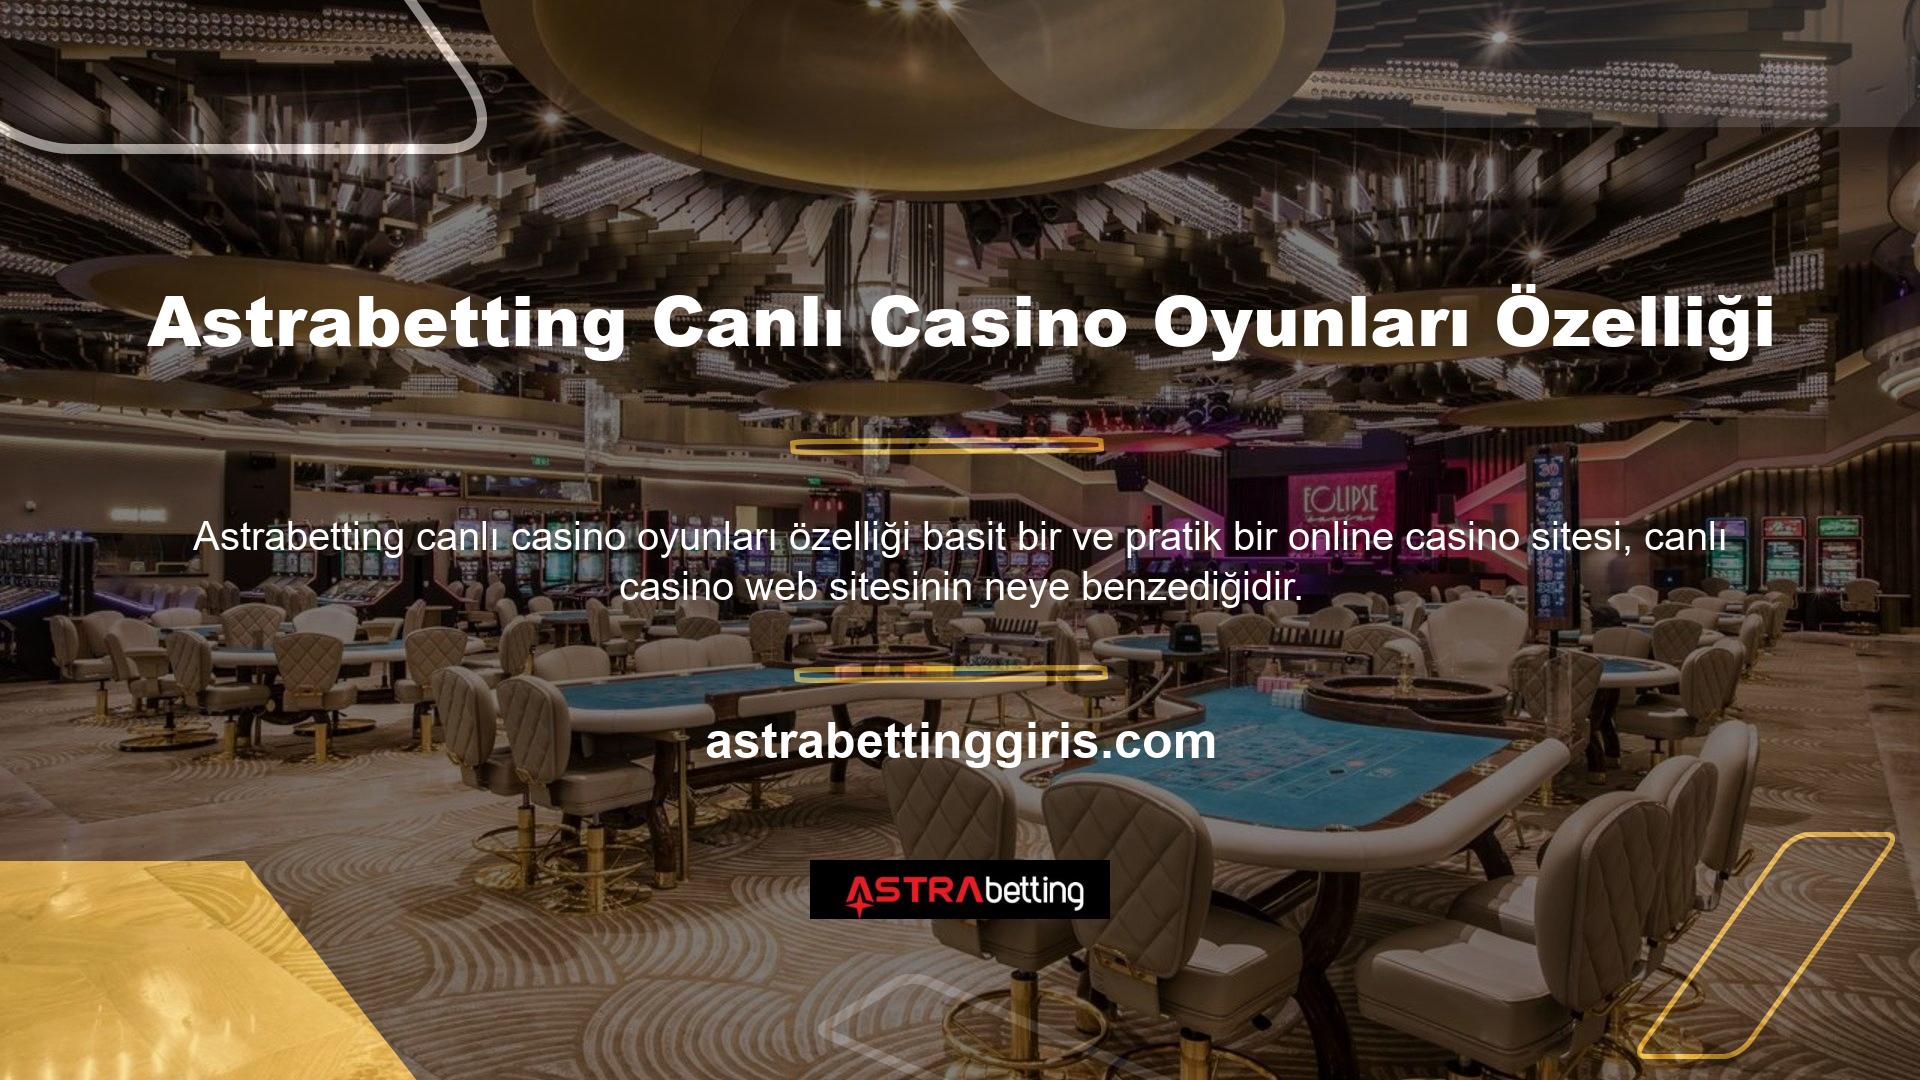 Bu sayfanın tasarımı sayesinde Astrabetting canlı casino oyunlarınız sırasında hiçbir göz yorgunluğu veya kafa karışıklığı meydana gelmez